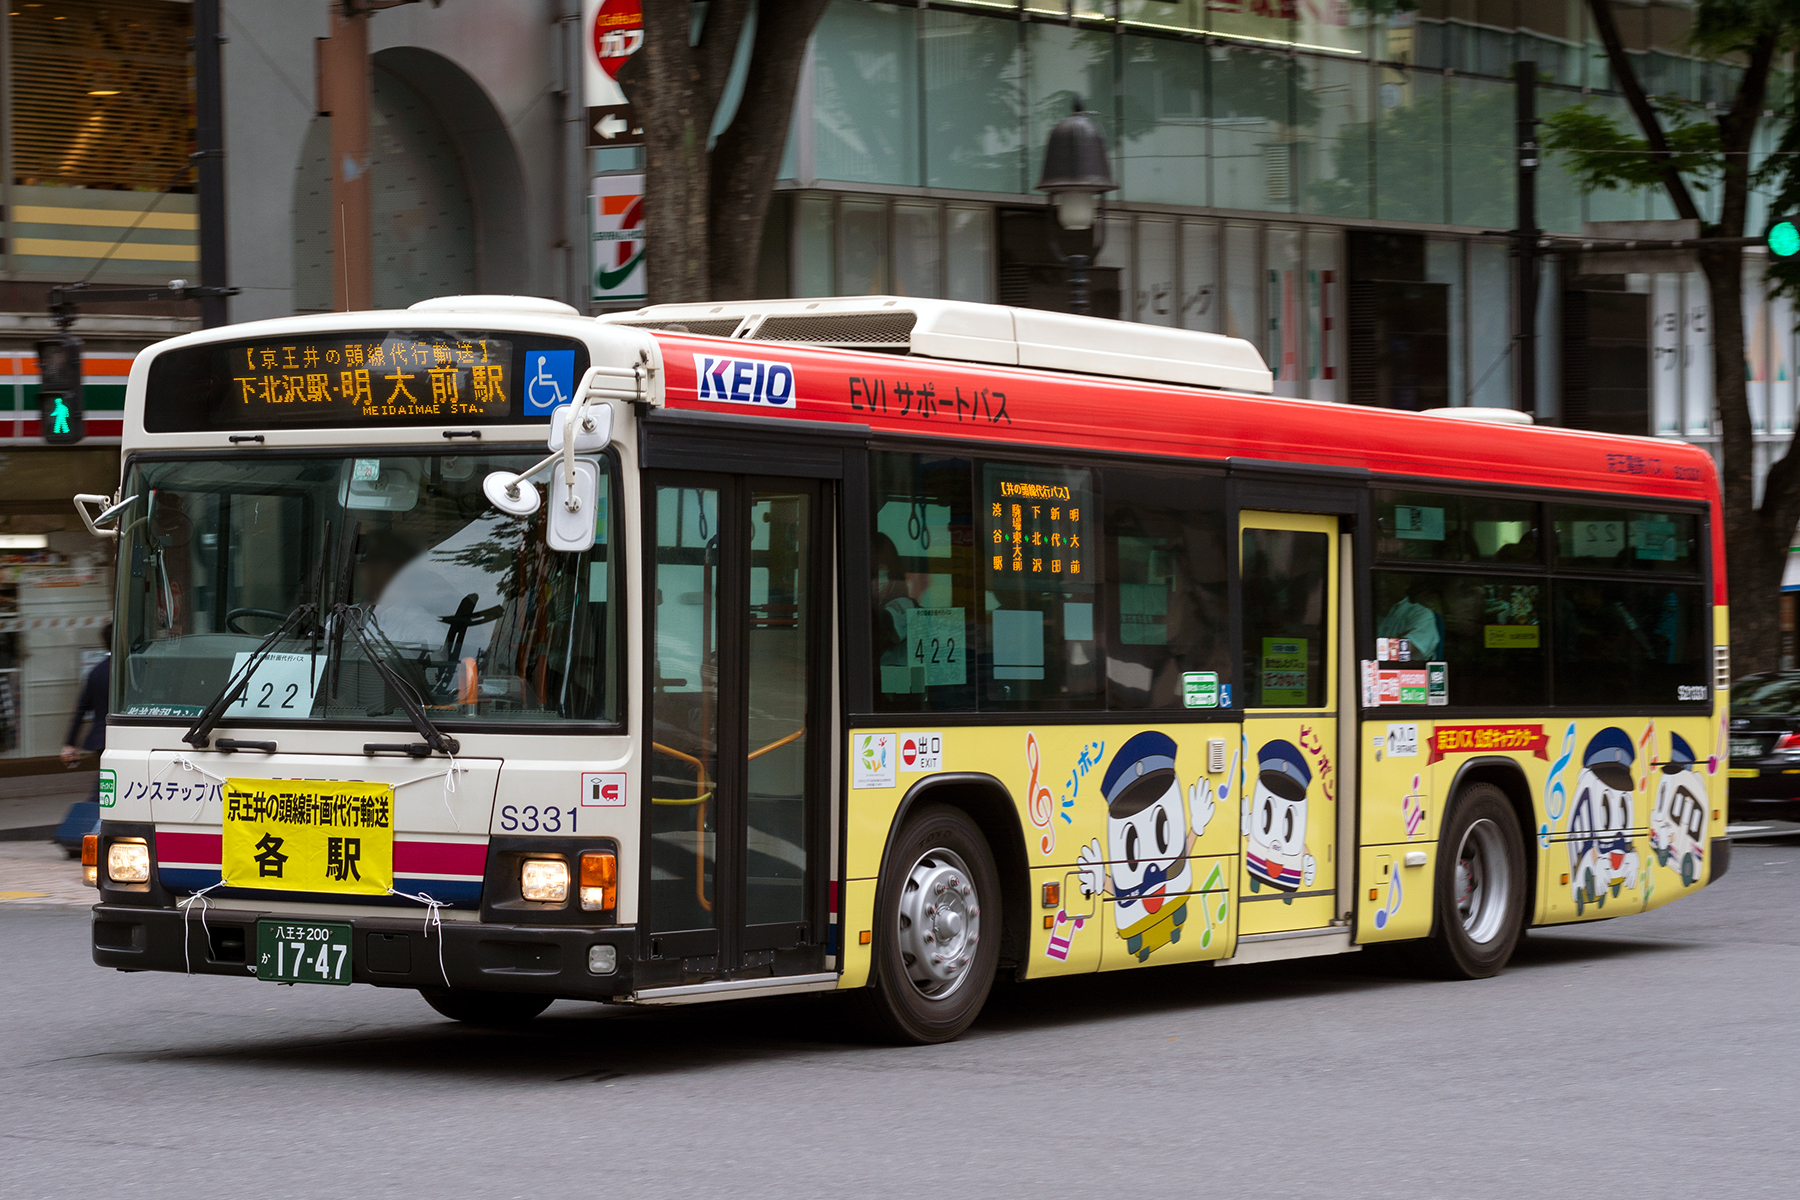 【京王電鉄バス】S21331 京王バス